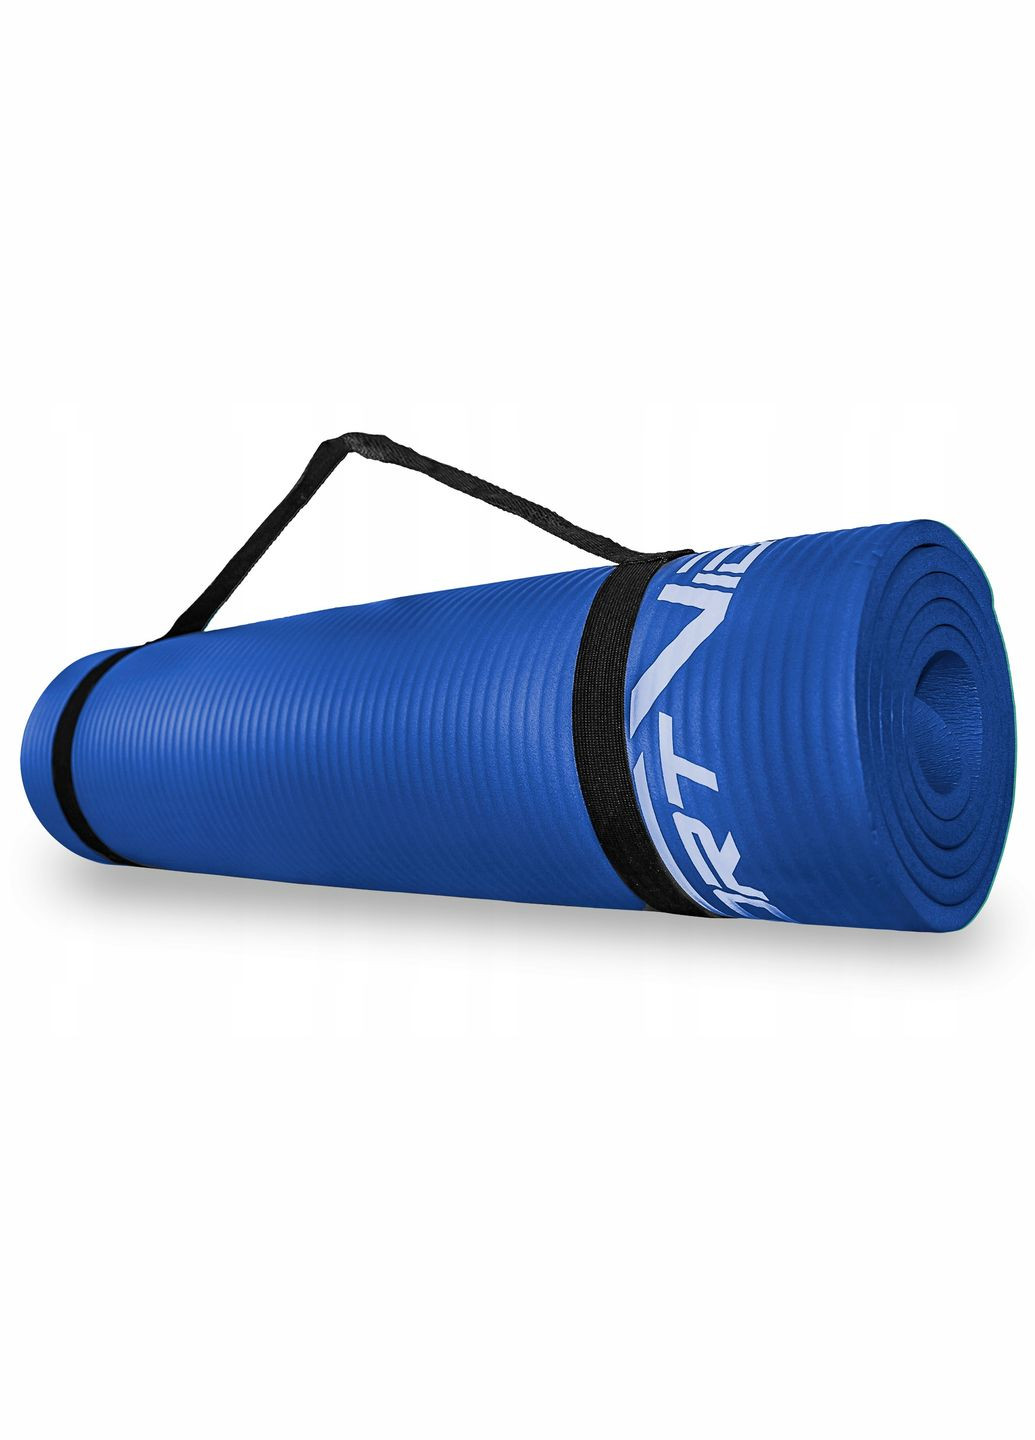 Коврик (мат) спортивный NBR 180 x 60 x 1.5 см для йоги и фитнеса SVHK0075 Blue SportVida sv-hk0075 (275095897)